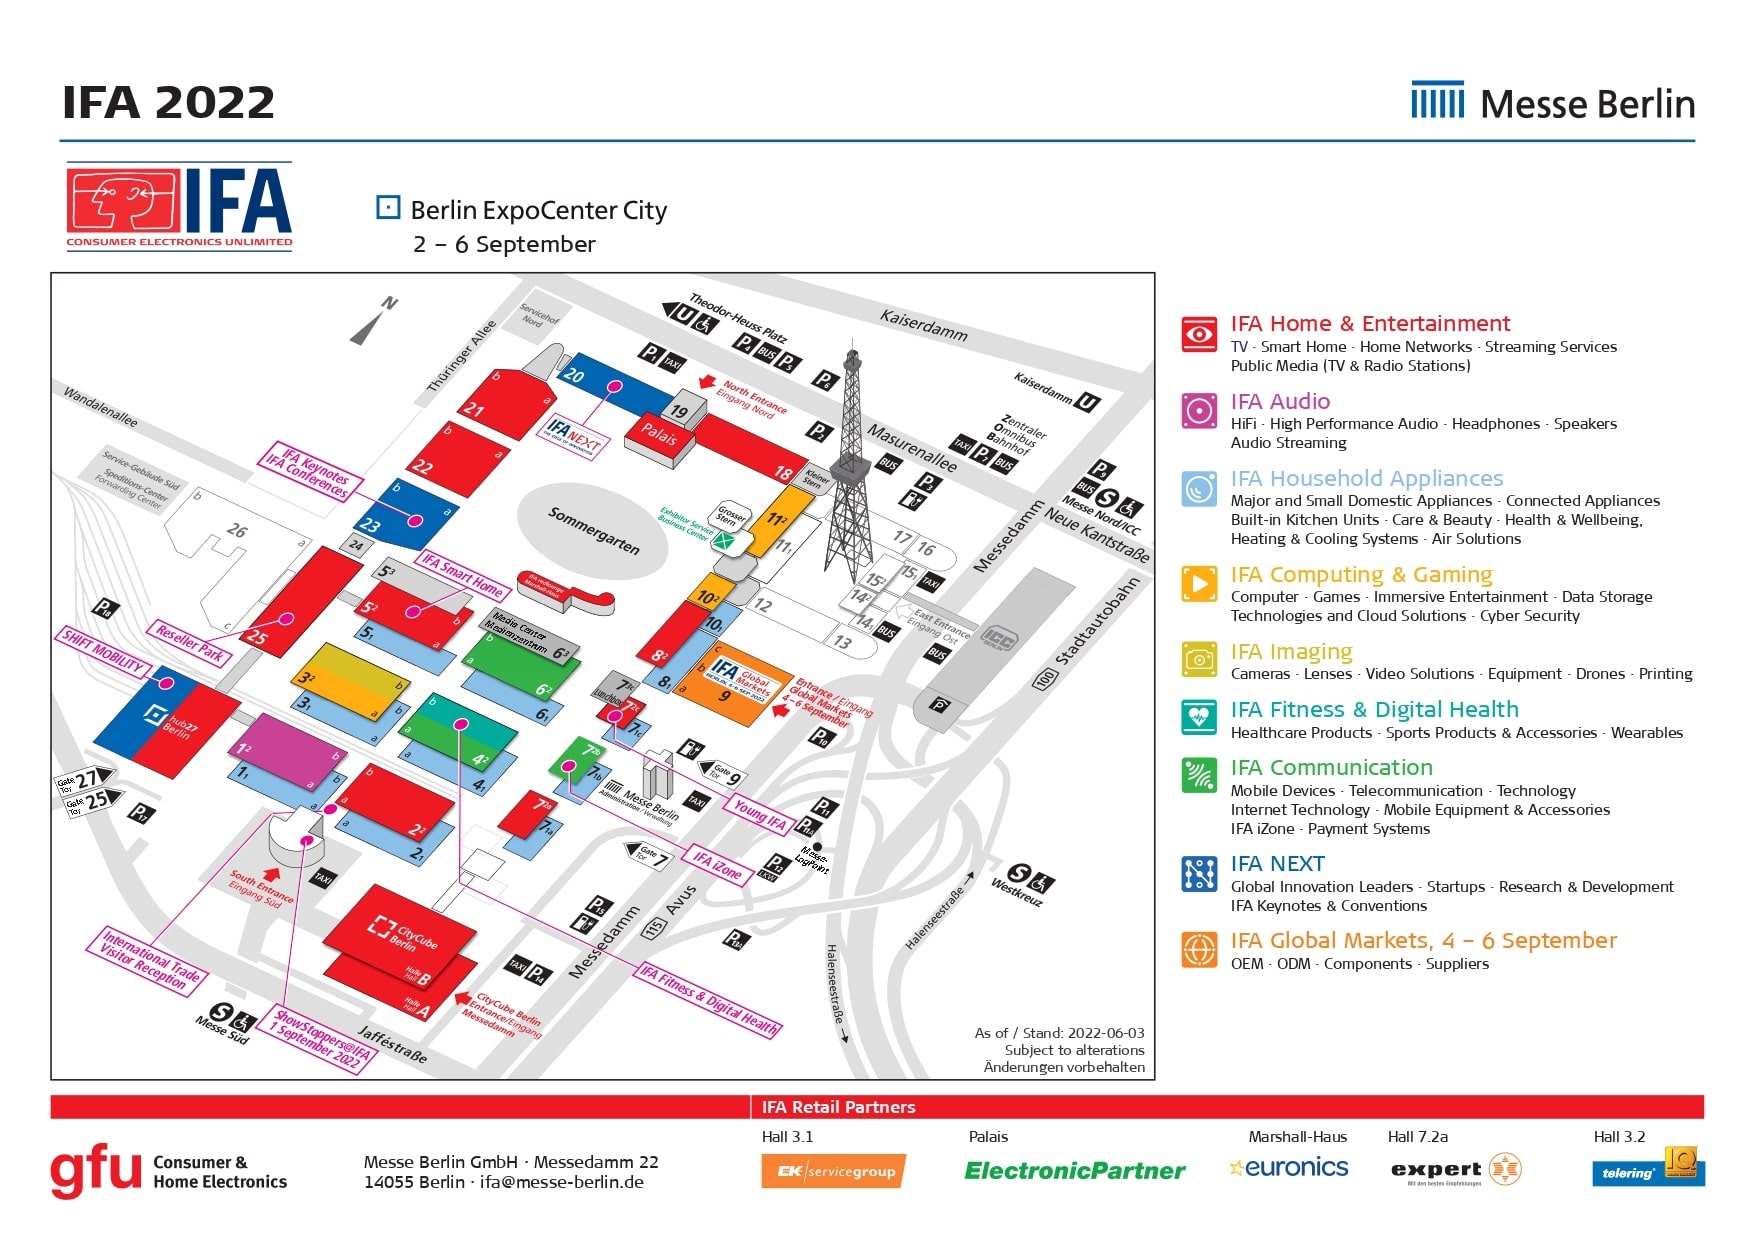 IFA 2022 Berlin Occupancy, floor plan, exhibitors and more